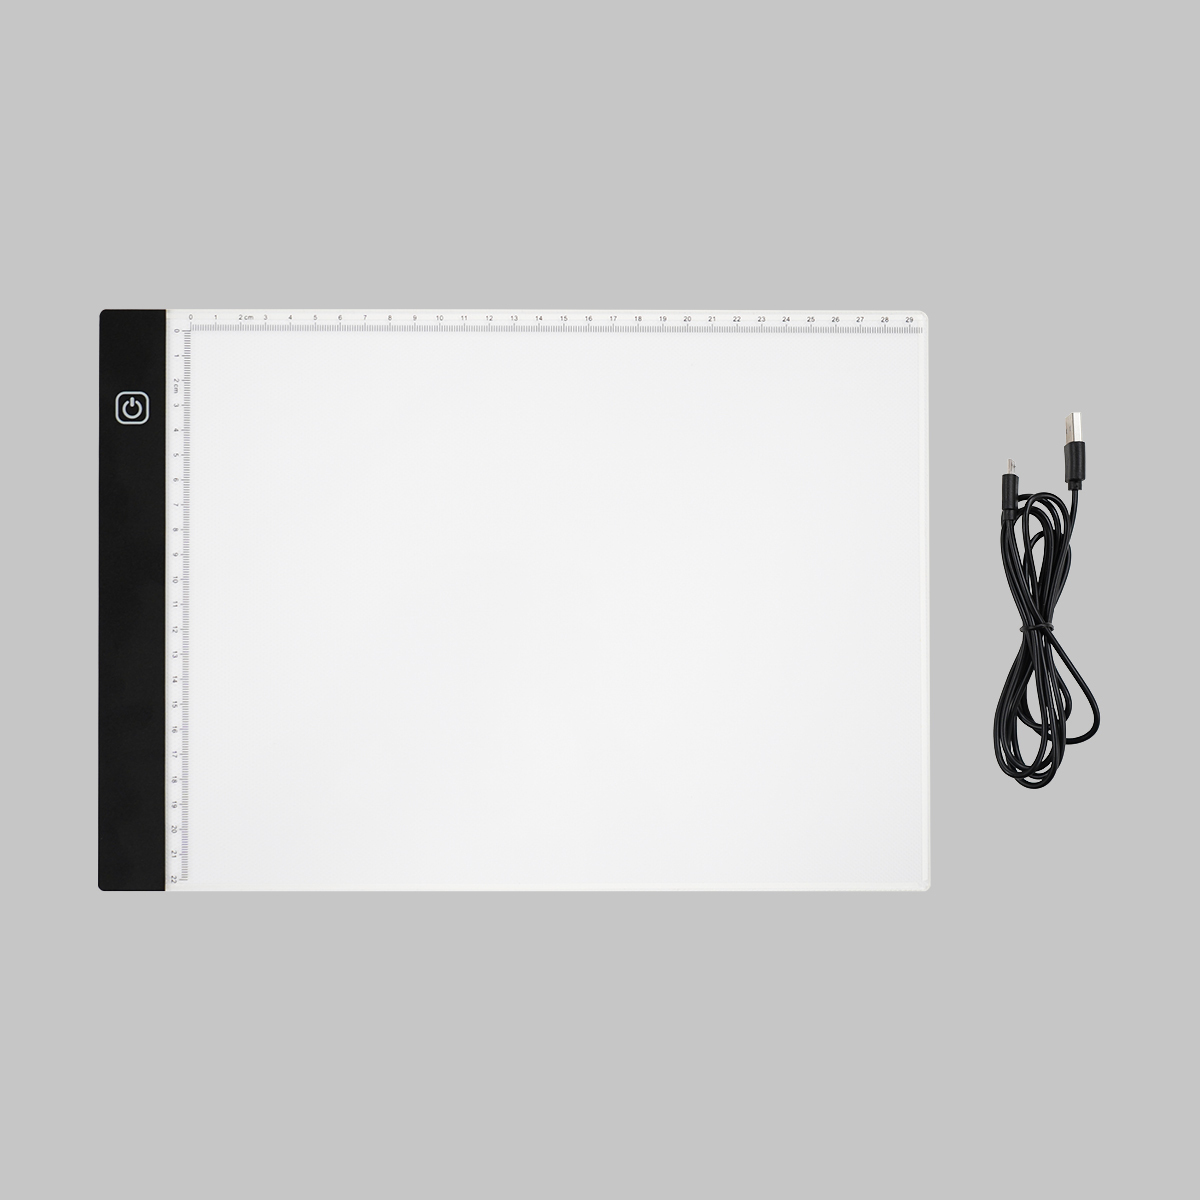 Ljusbord Trace Light Pad A4 i gruppen Konstnärsmaterial / Konstnärstillbehör / Ljusbord hos Pen Store (129189)